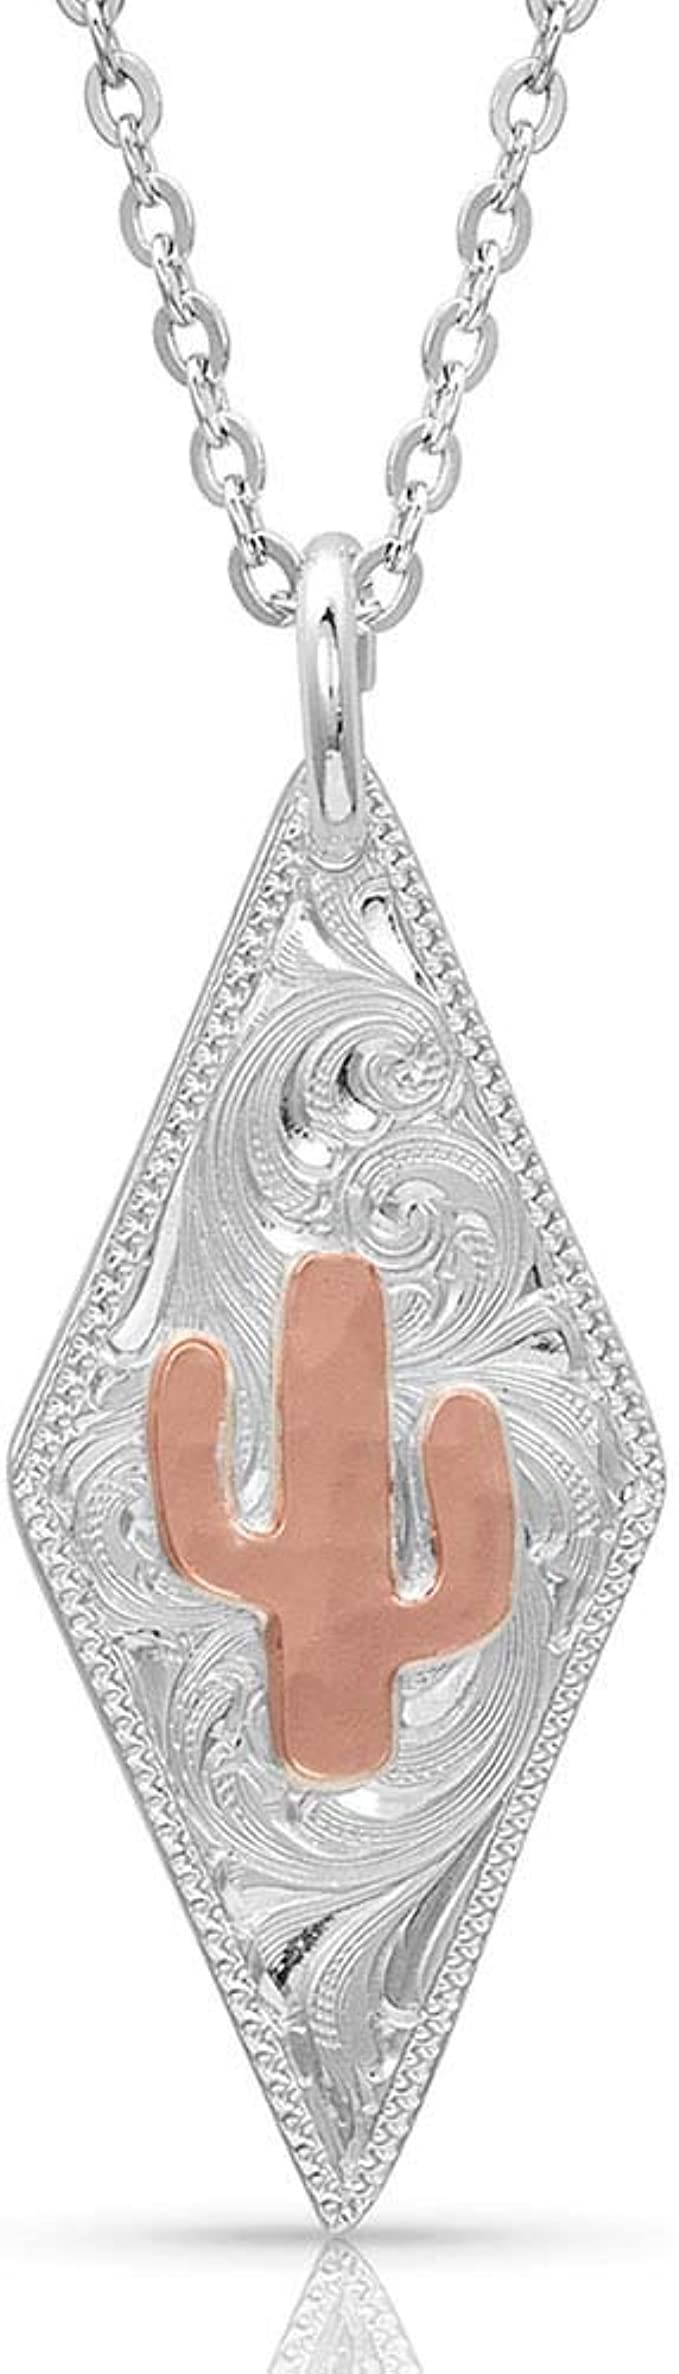 Montana Silversmiths TWO TONE CACTUS NECKLACE w/ diamond pendant